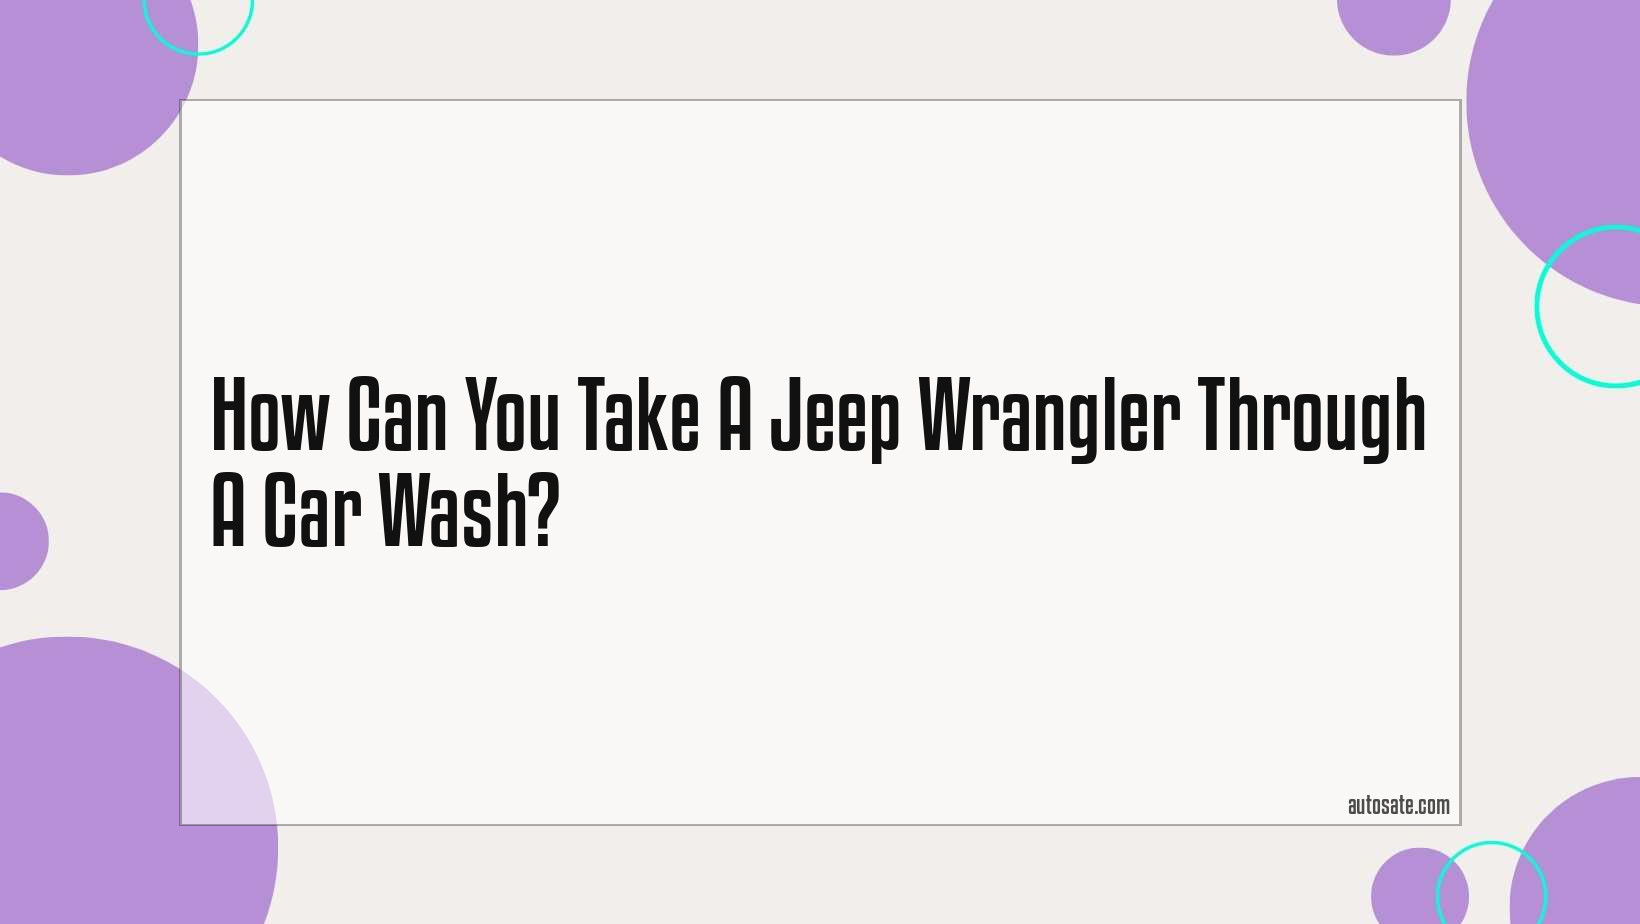 Can You Take A Jeep Wrangler Through A Car Wash